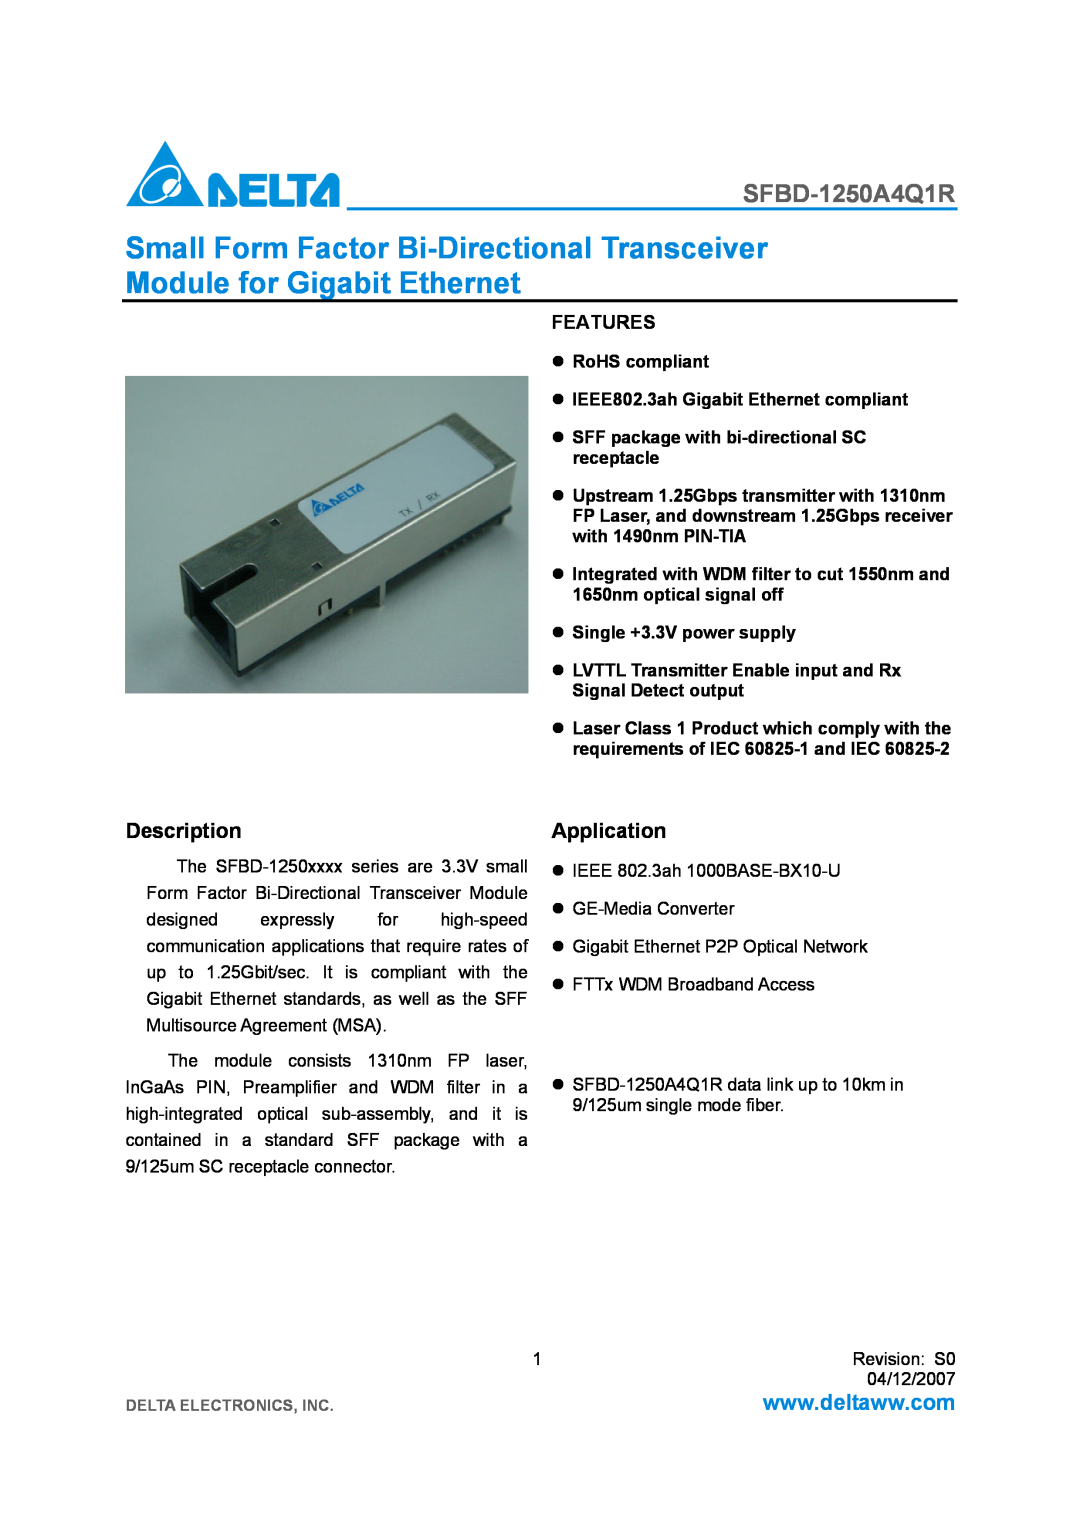 Delta Electronics SFBD-1250A4Q1R manual Description, Application, Features 